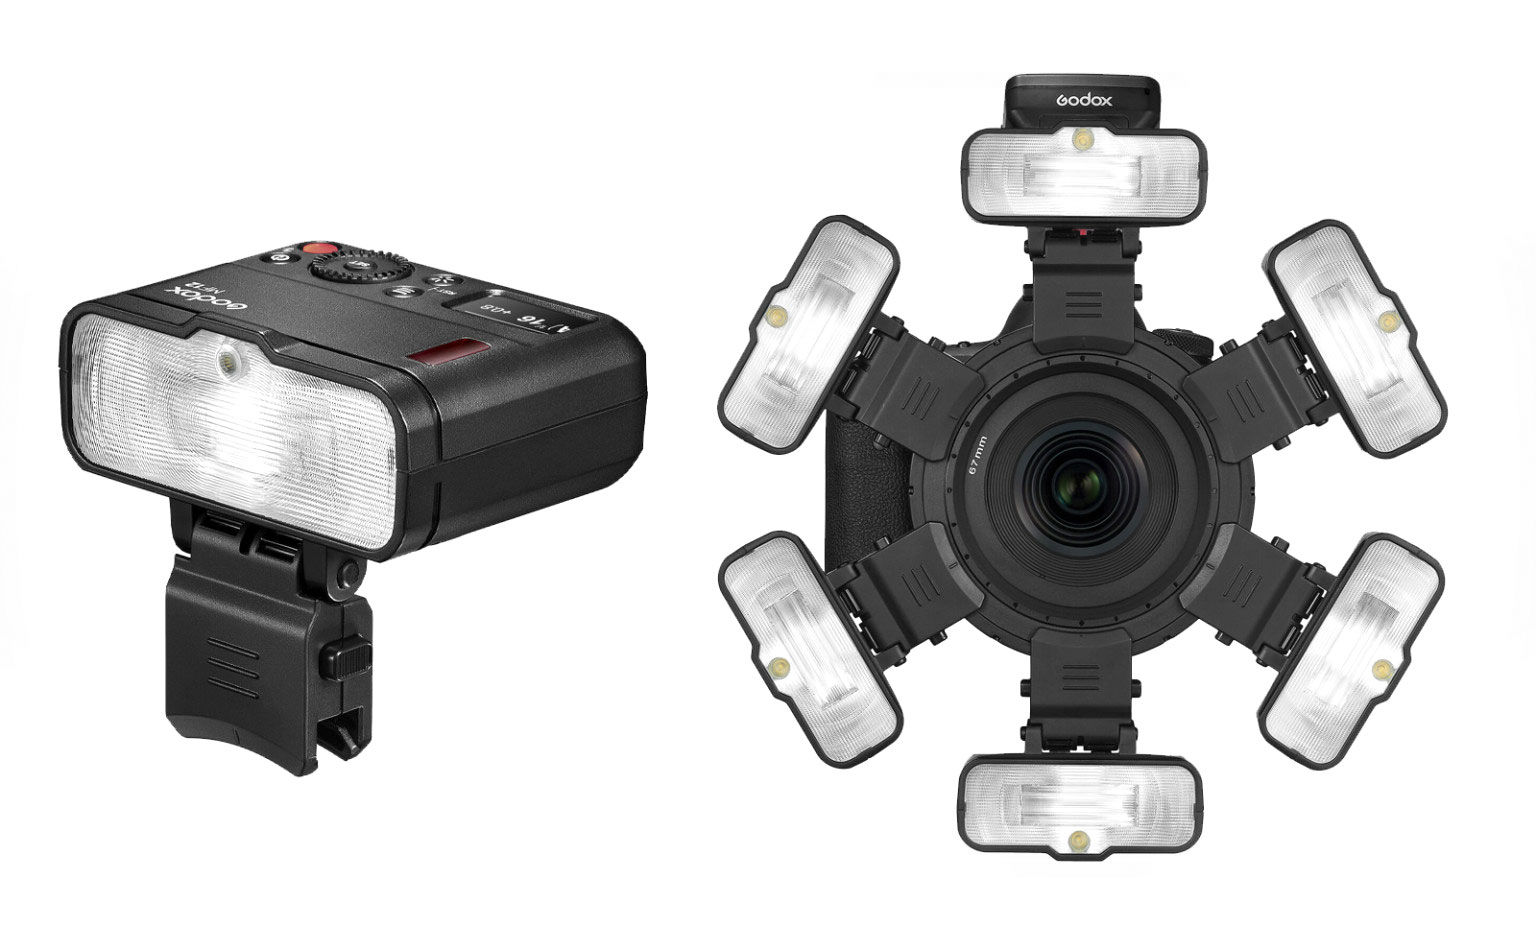 Godox ra mắt đèn chụp macro MF12, thiết kế gắn trước ống kính